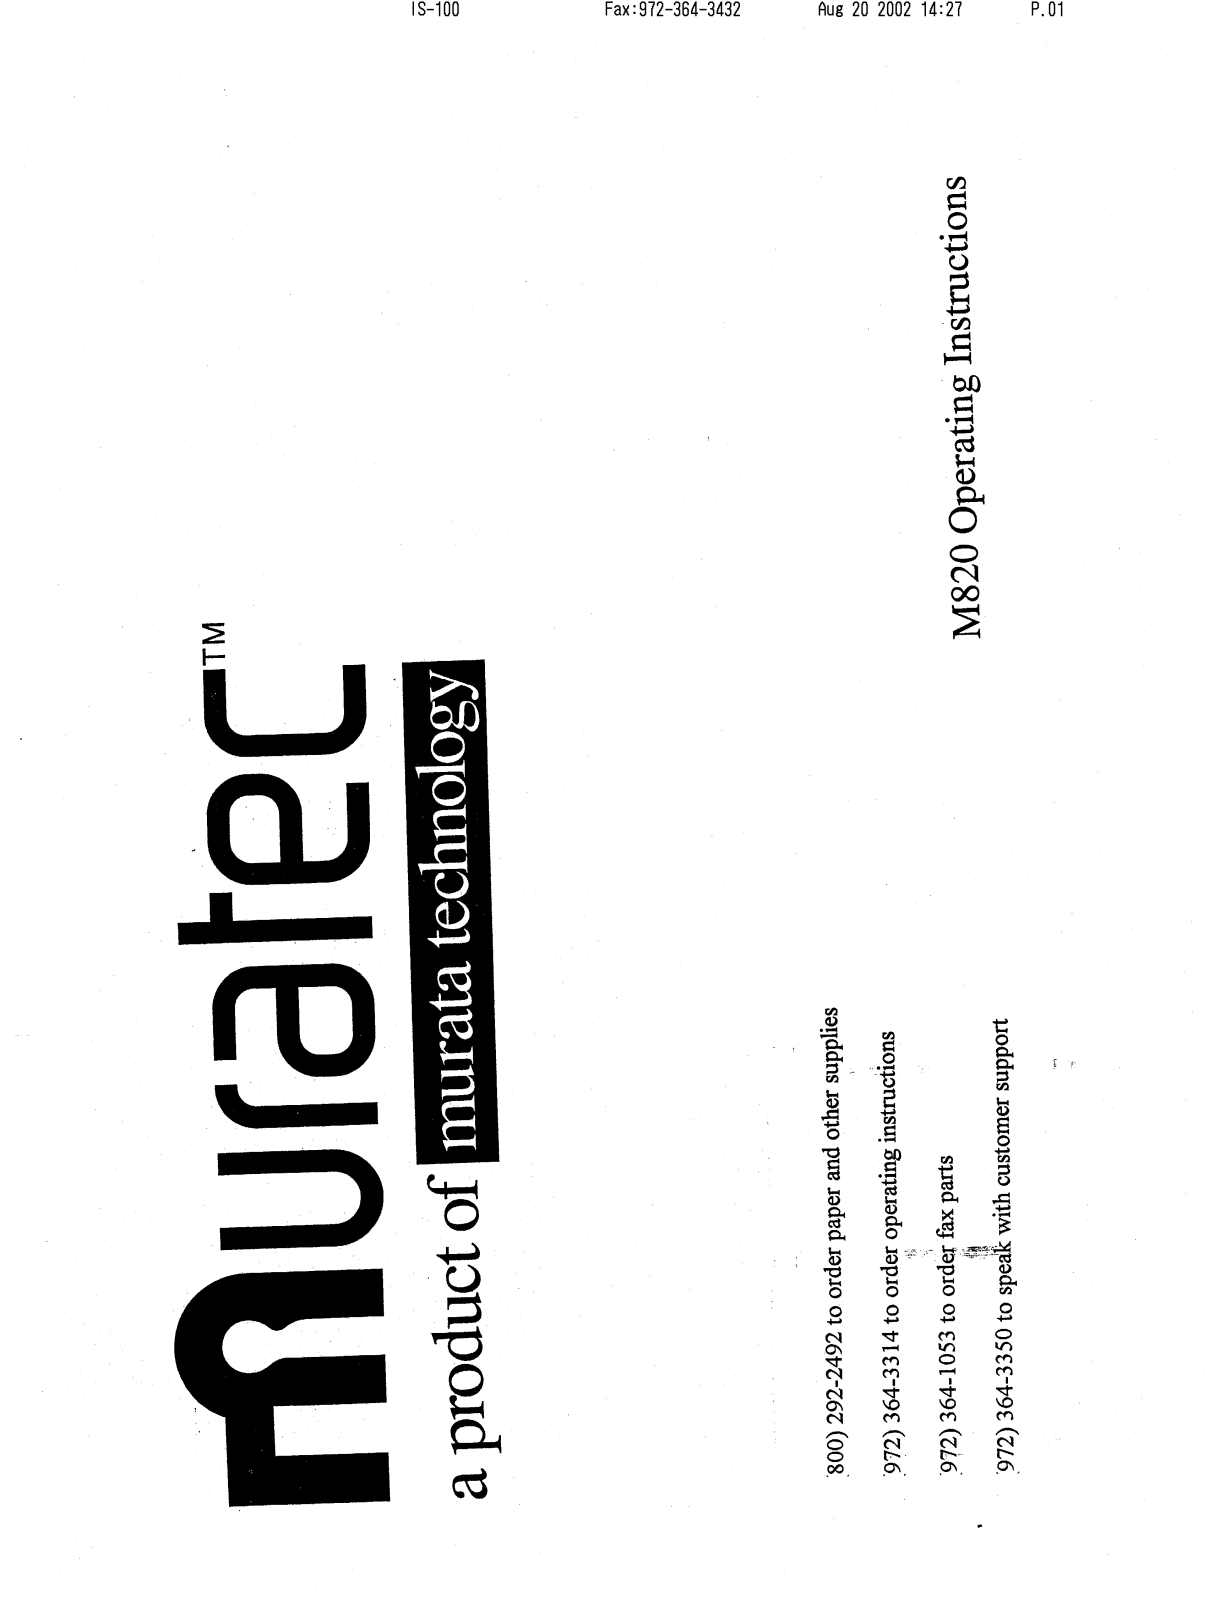 Muratec M-820 Operating Manual